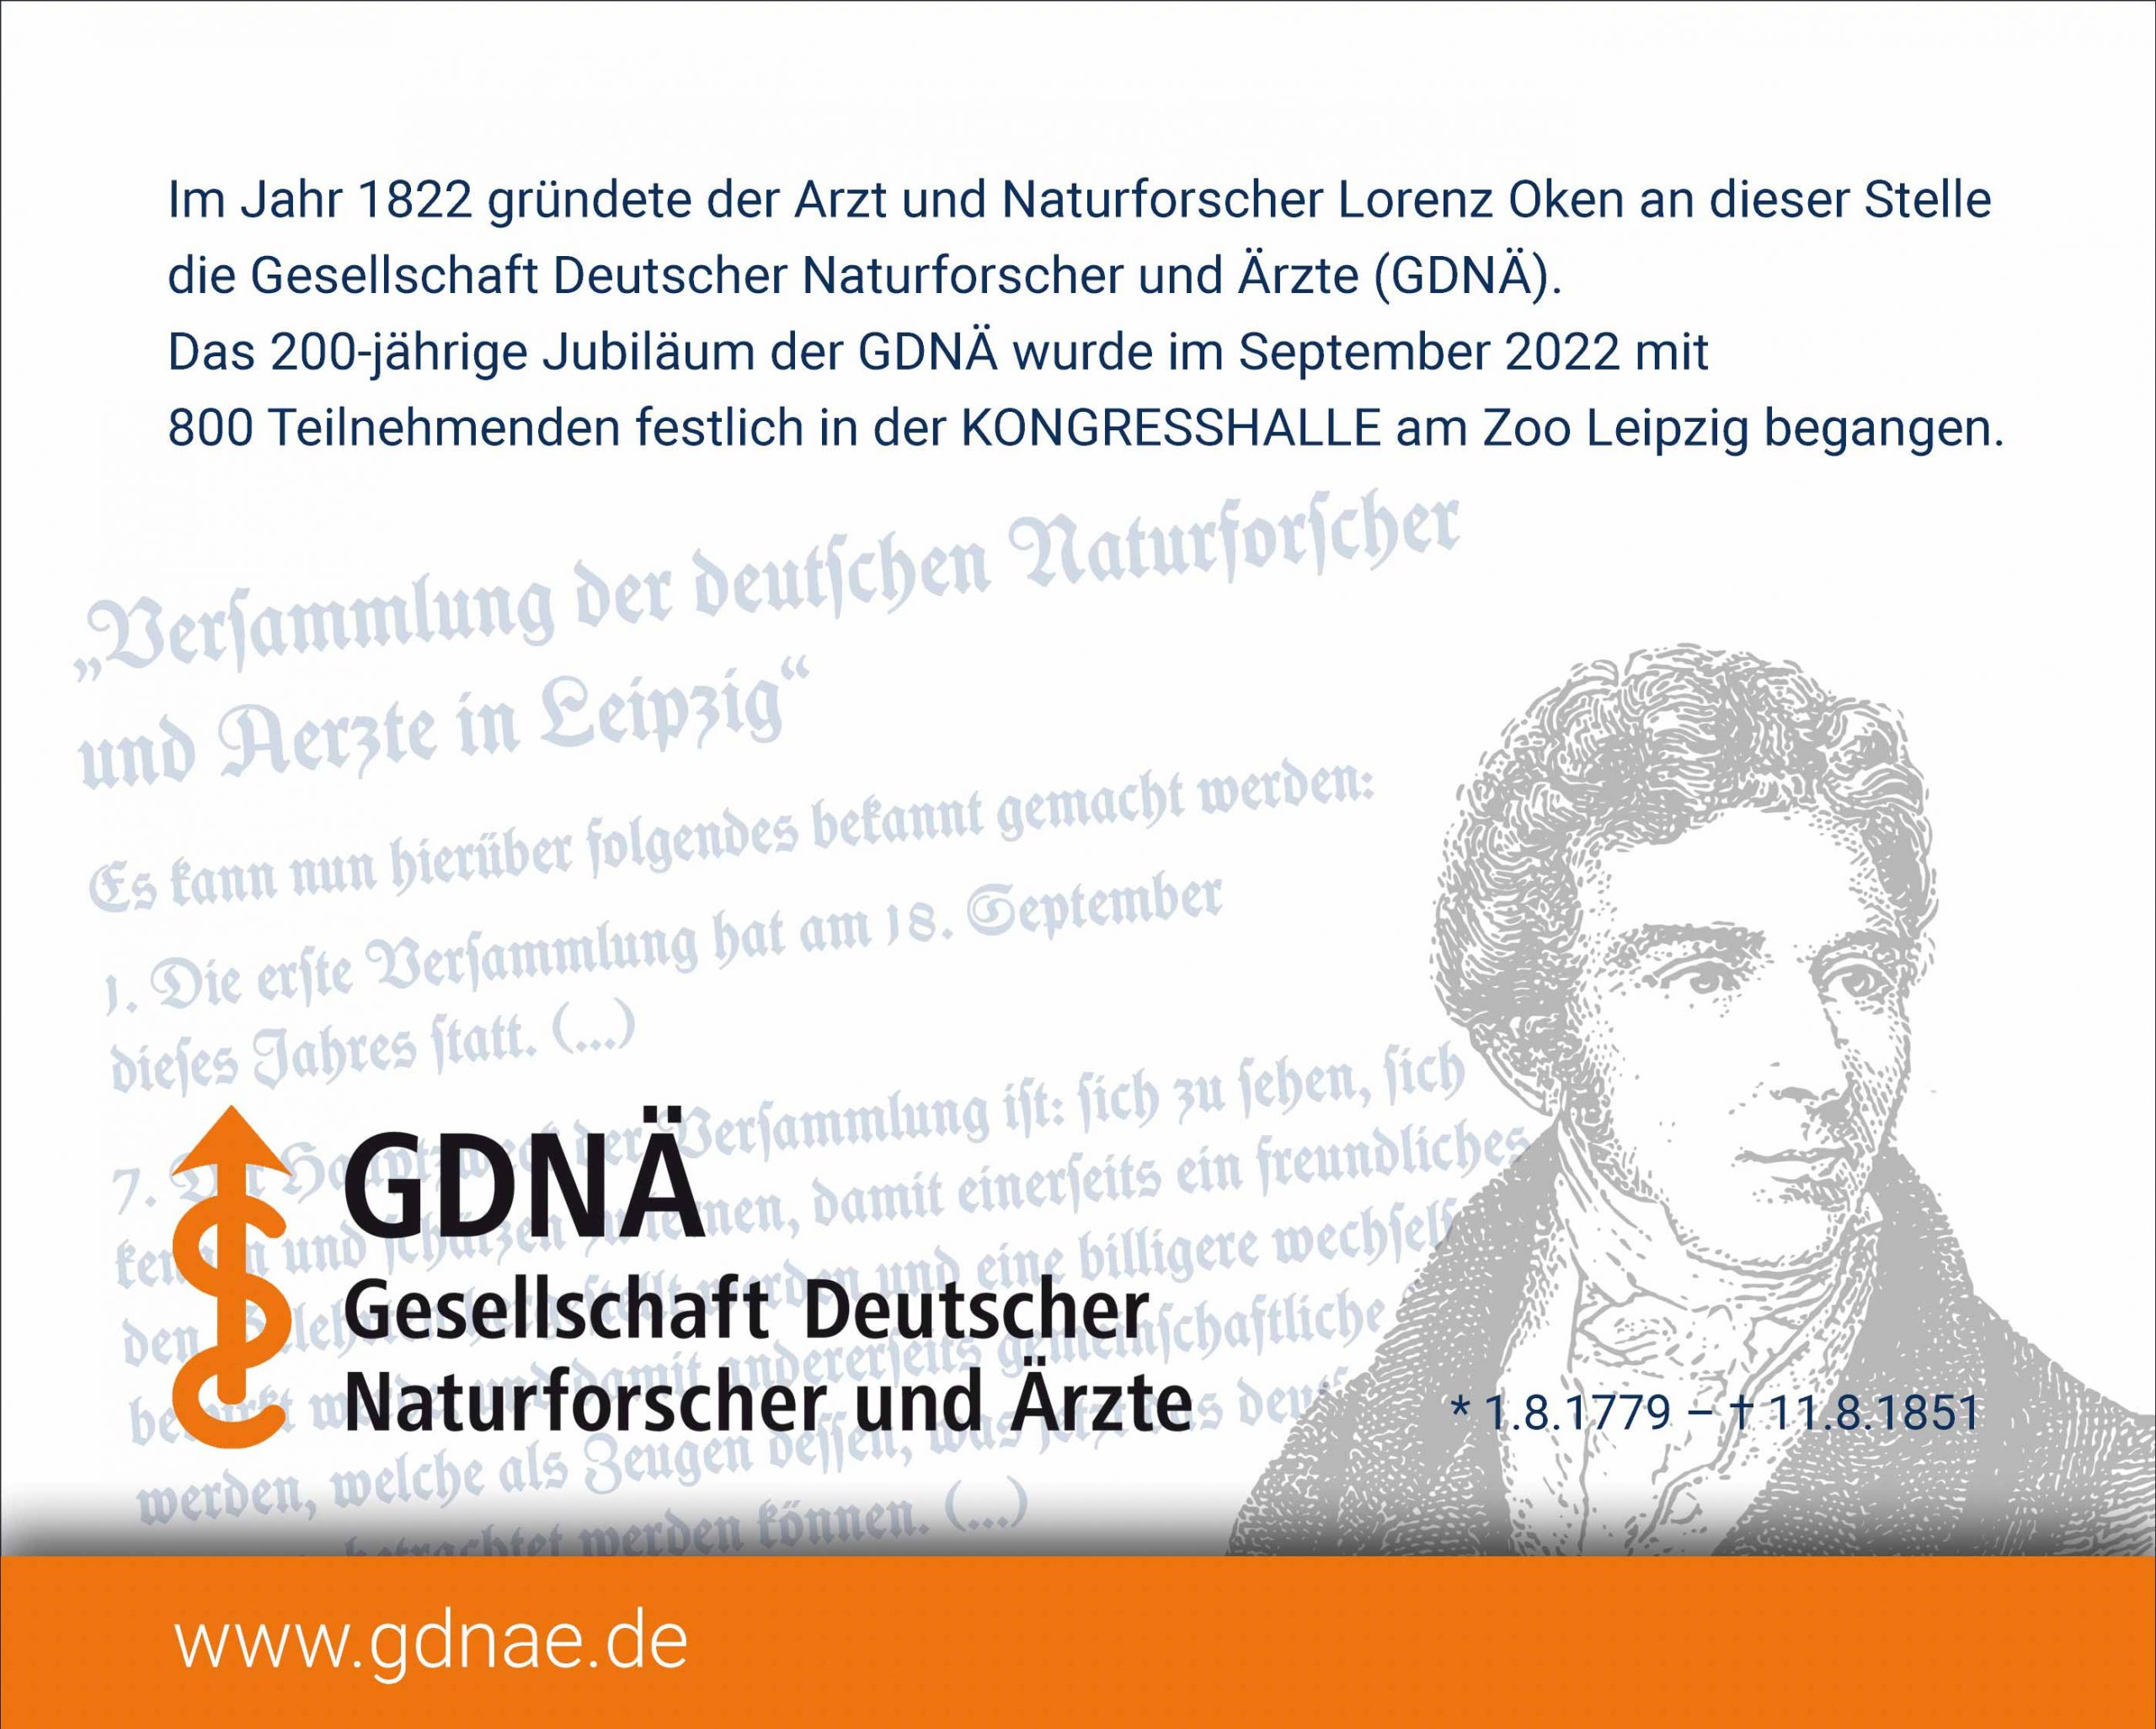 Die Plakette zeigt Lorenz Oken, den Gründer der GDNÄ, und einen Auszug aus der Gründungsurkunde.